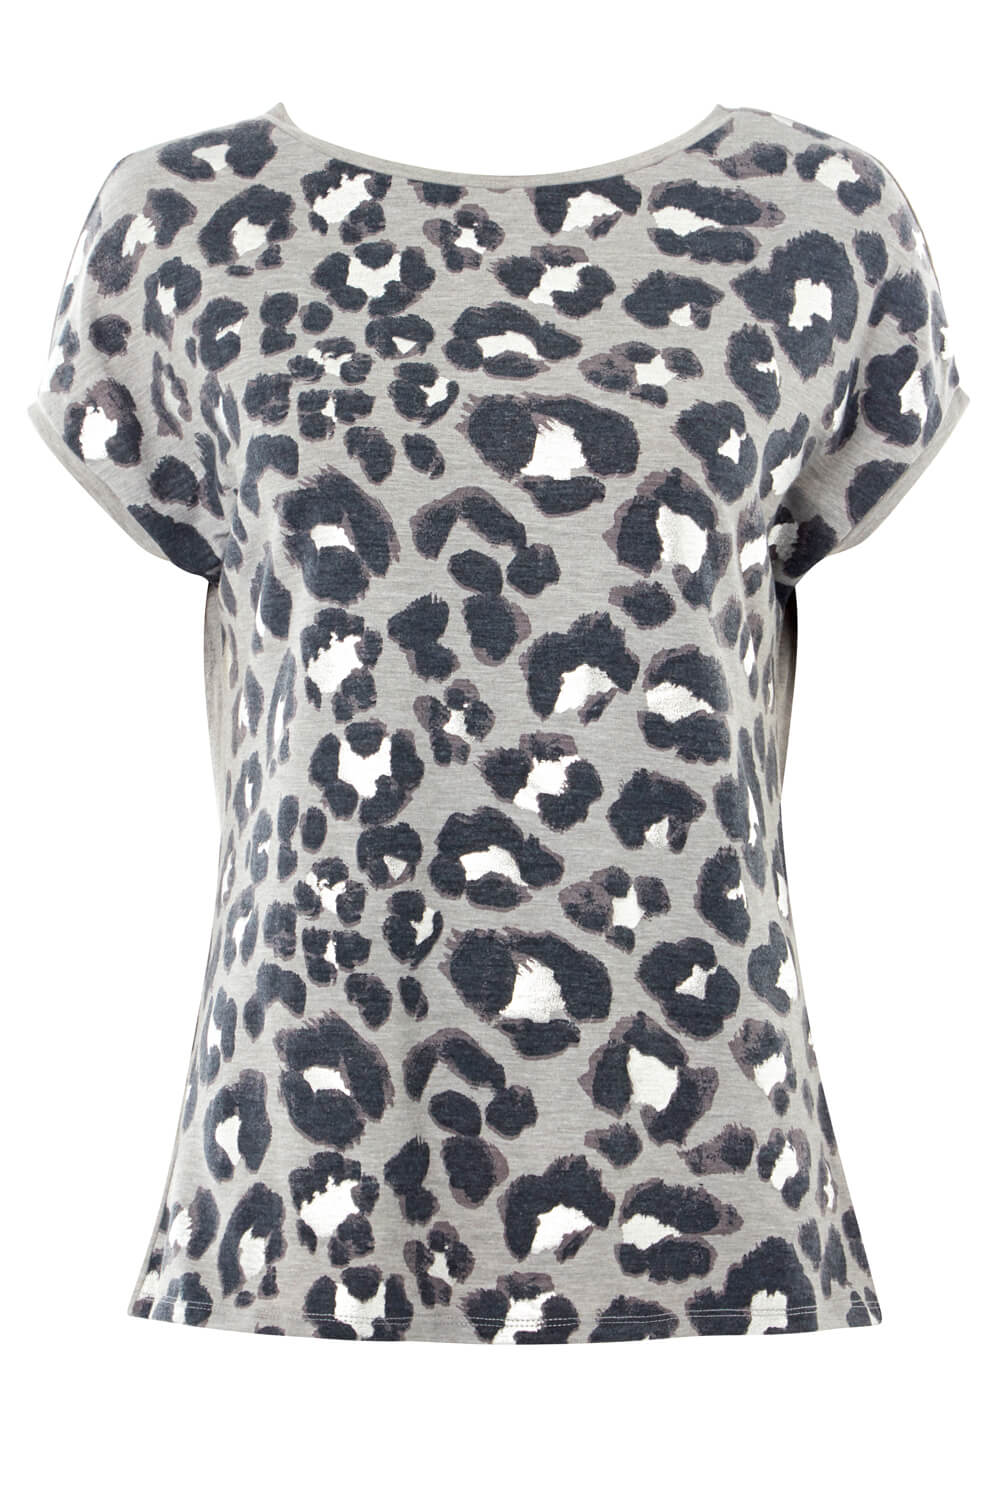 Leopard Foil Print T-Shirt in Grey - Roman Originals UK